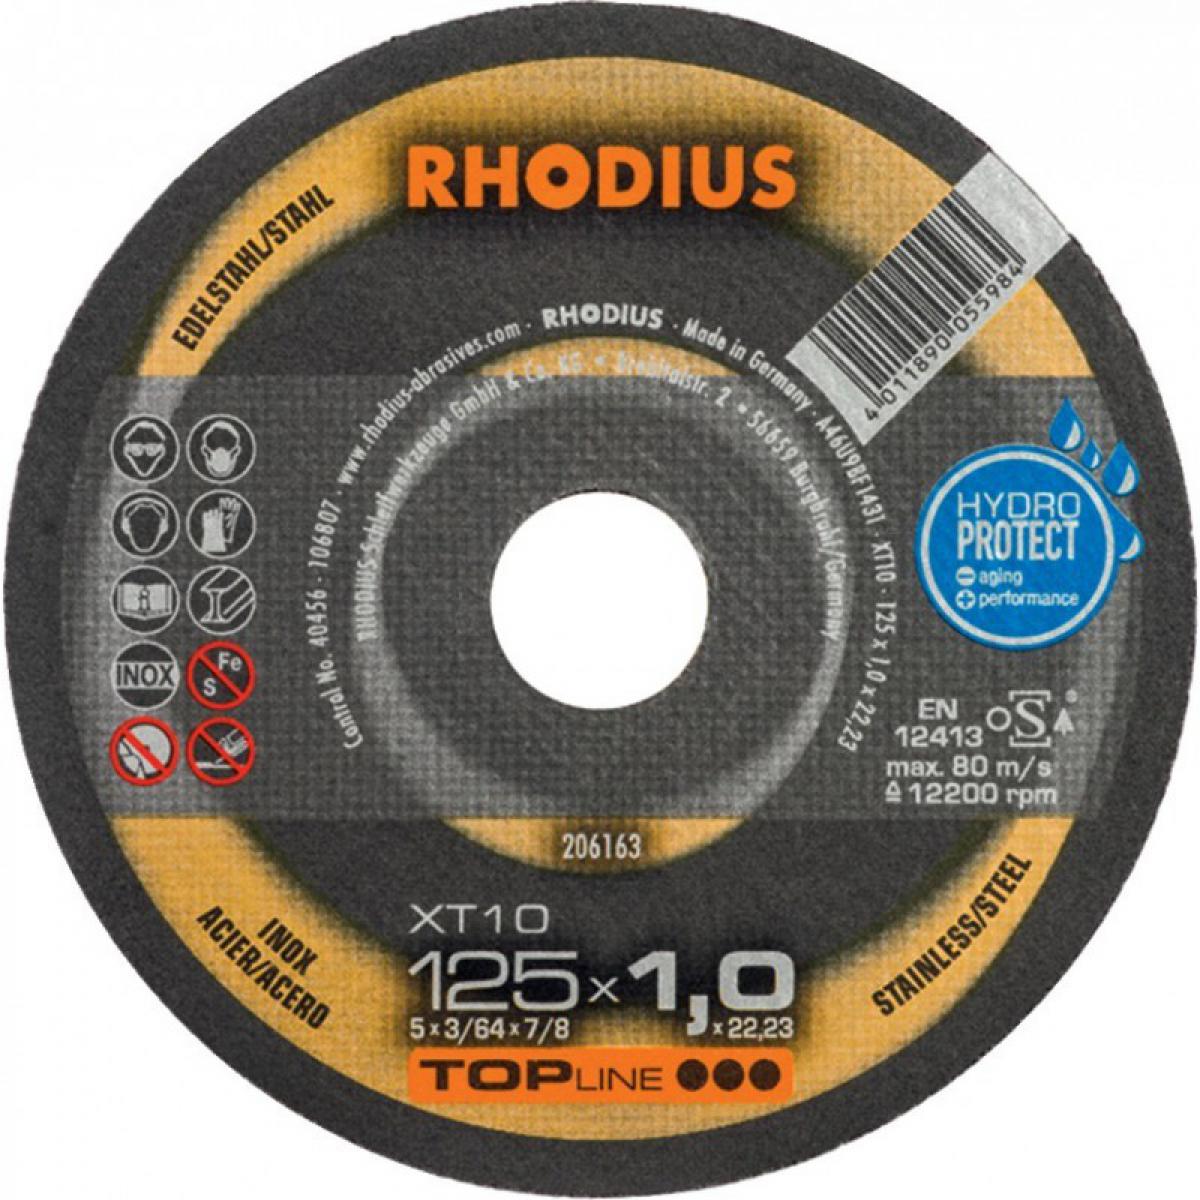 Rhodius - Disque a tronconner acier / inox XT10 115 x 1,0mm ger. Rhodius - Outils de coupe